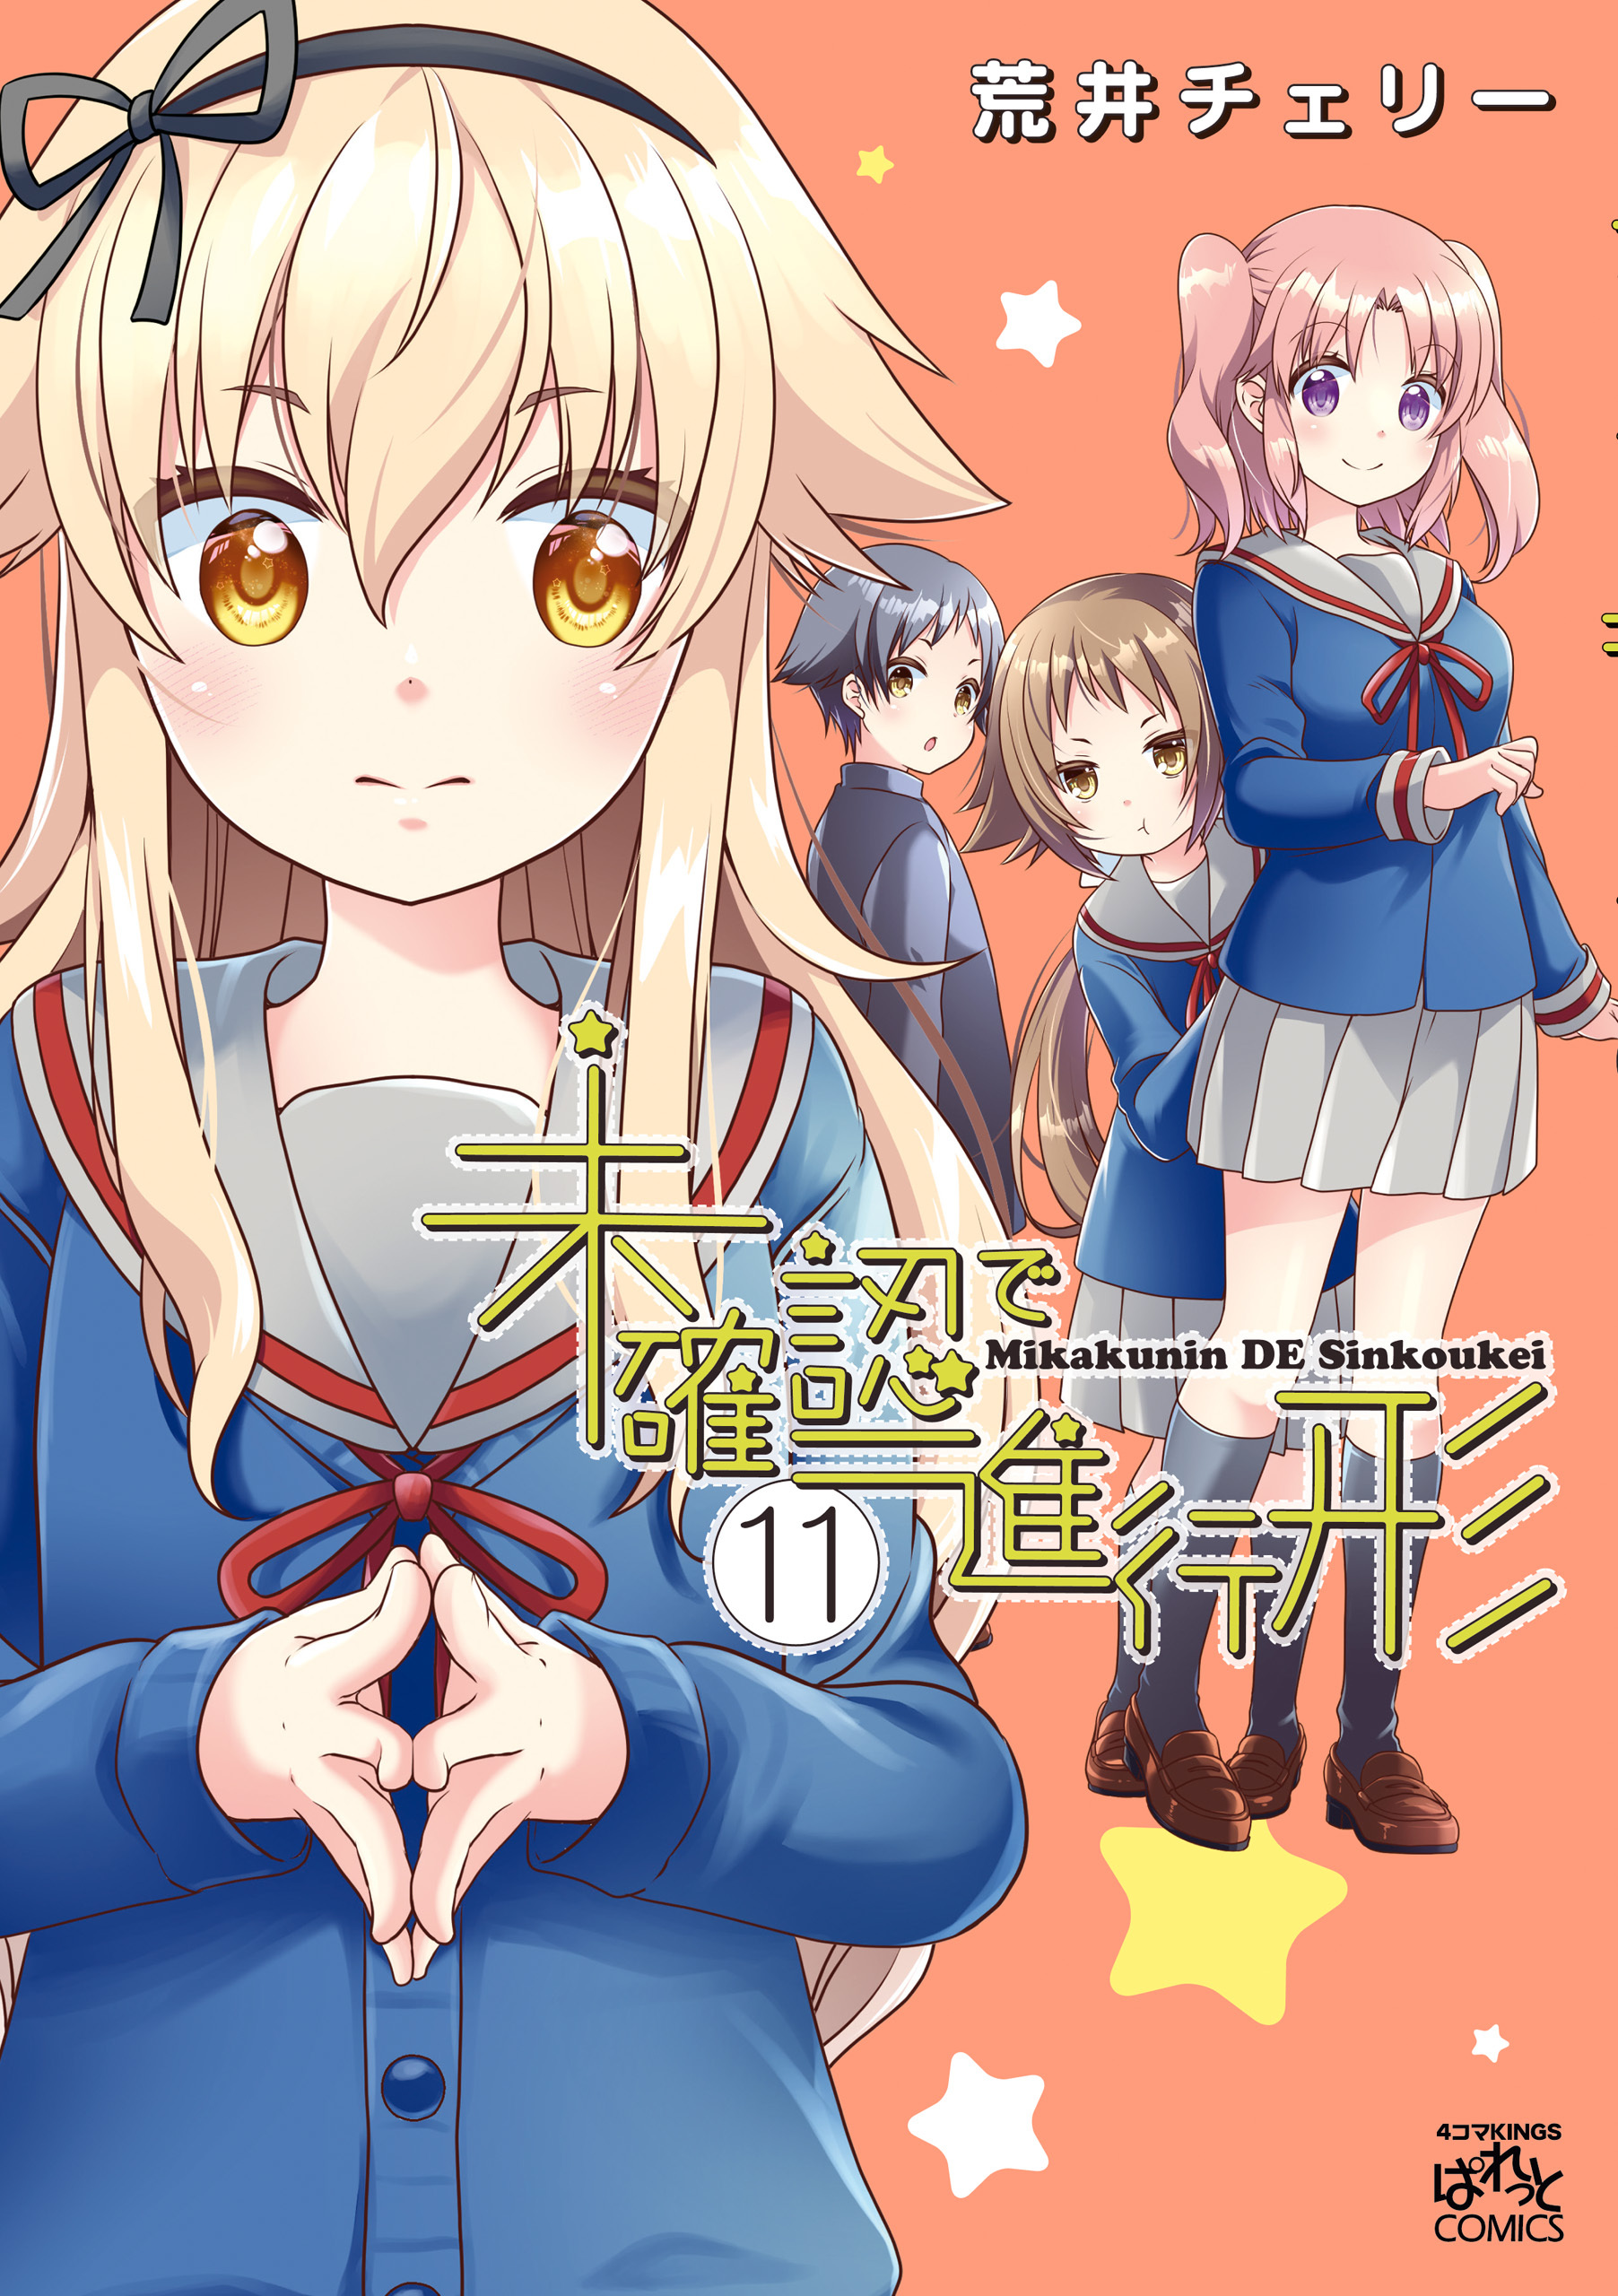 Mikakunin.de.Shinkoukei  Arte de anime, Anime para ver, Animes shojo